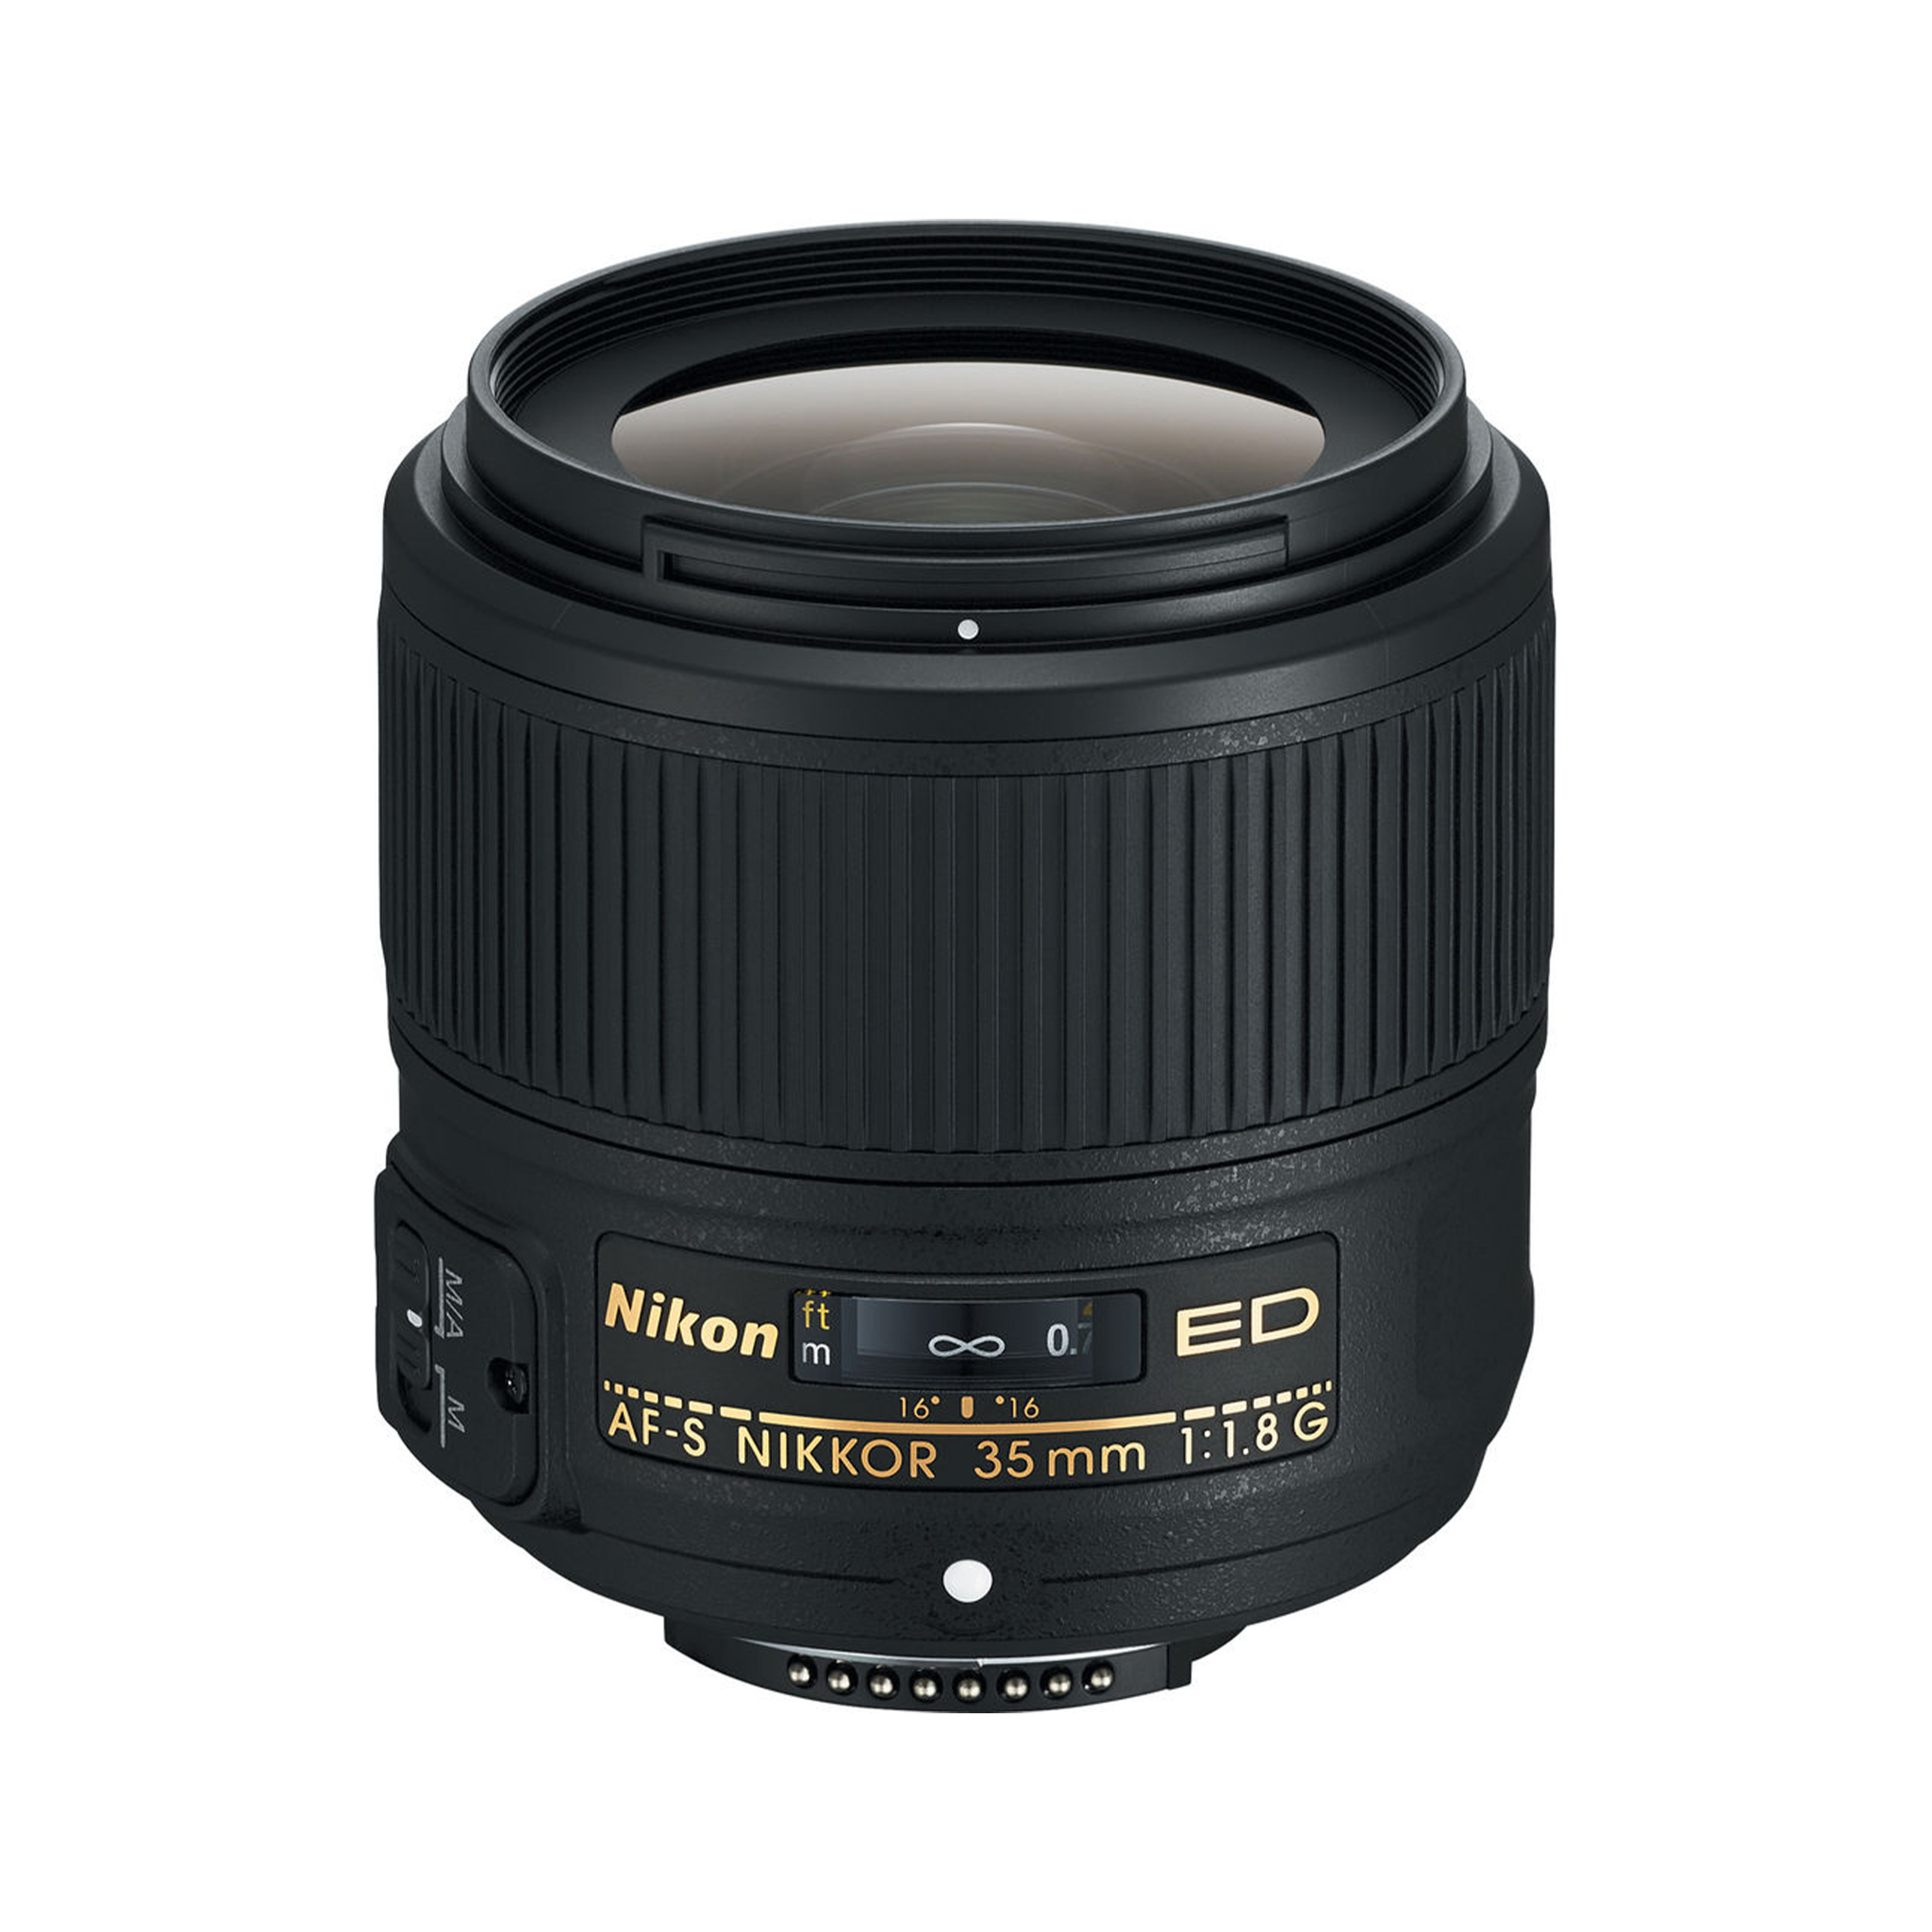 Nikon AF-S NIKKOR 35mm f/1.8G ED Lens-Camera Lenses-futuromic